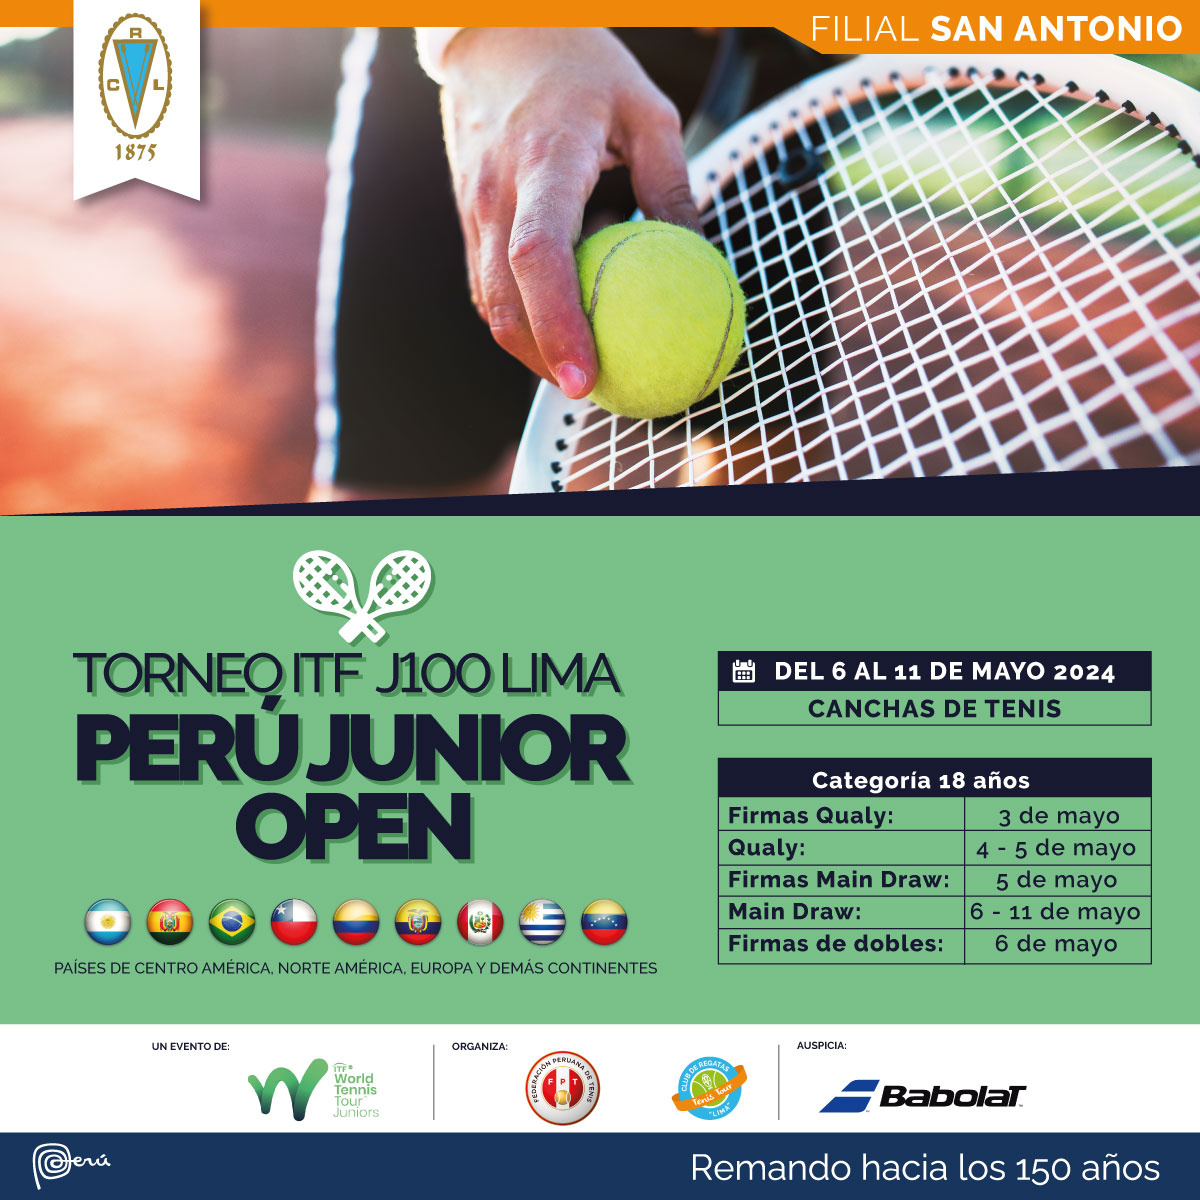 #Juniors |  Actividad de nuestros juniors del 06 al 11 de mayo, tanto en el exterior y como en nuestro país...
¡Vamos muchachos!
#TenisalMáximo #TAM20años #PasionPorElTenis #tenis #Tennis #Peruanos #VamosPeruanos #Peruanosxelmundo #Italia #Bolivia #Perú